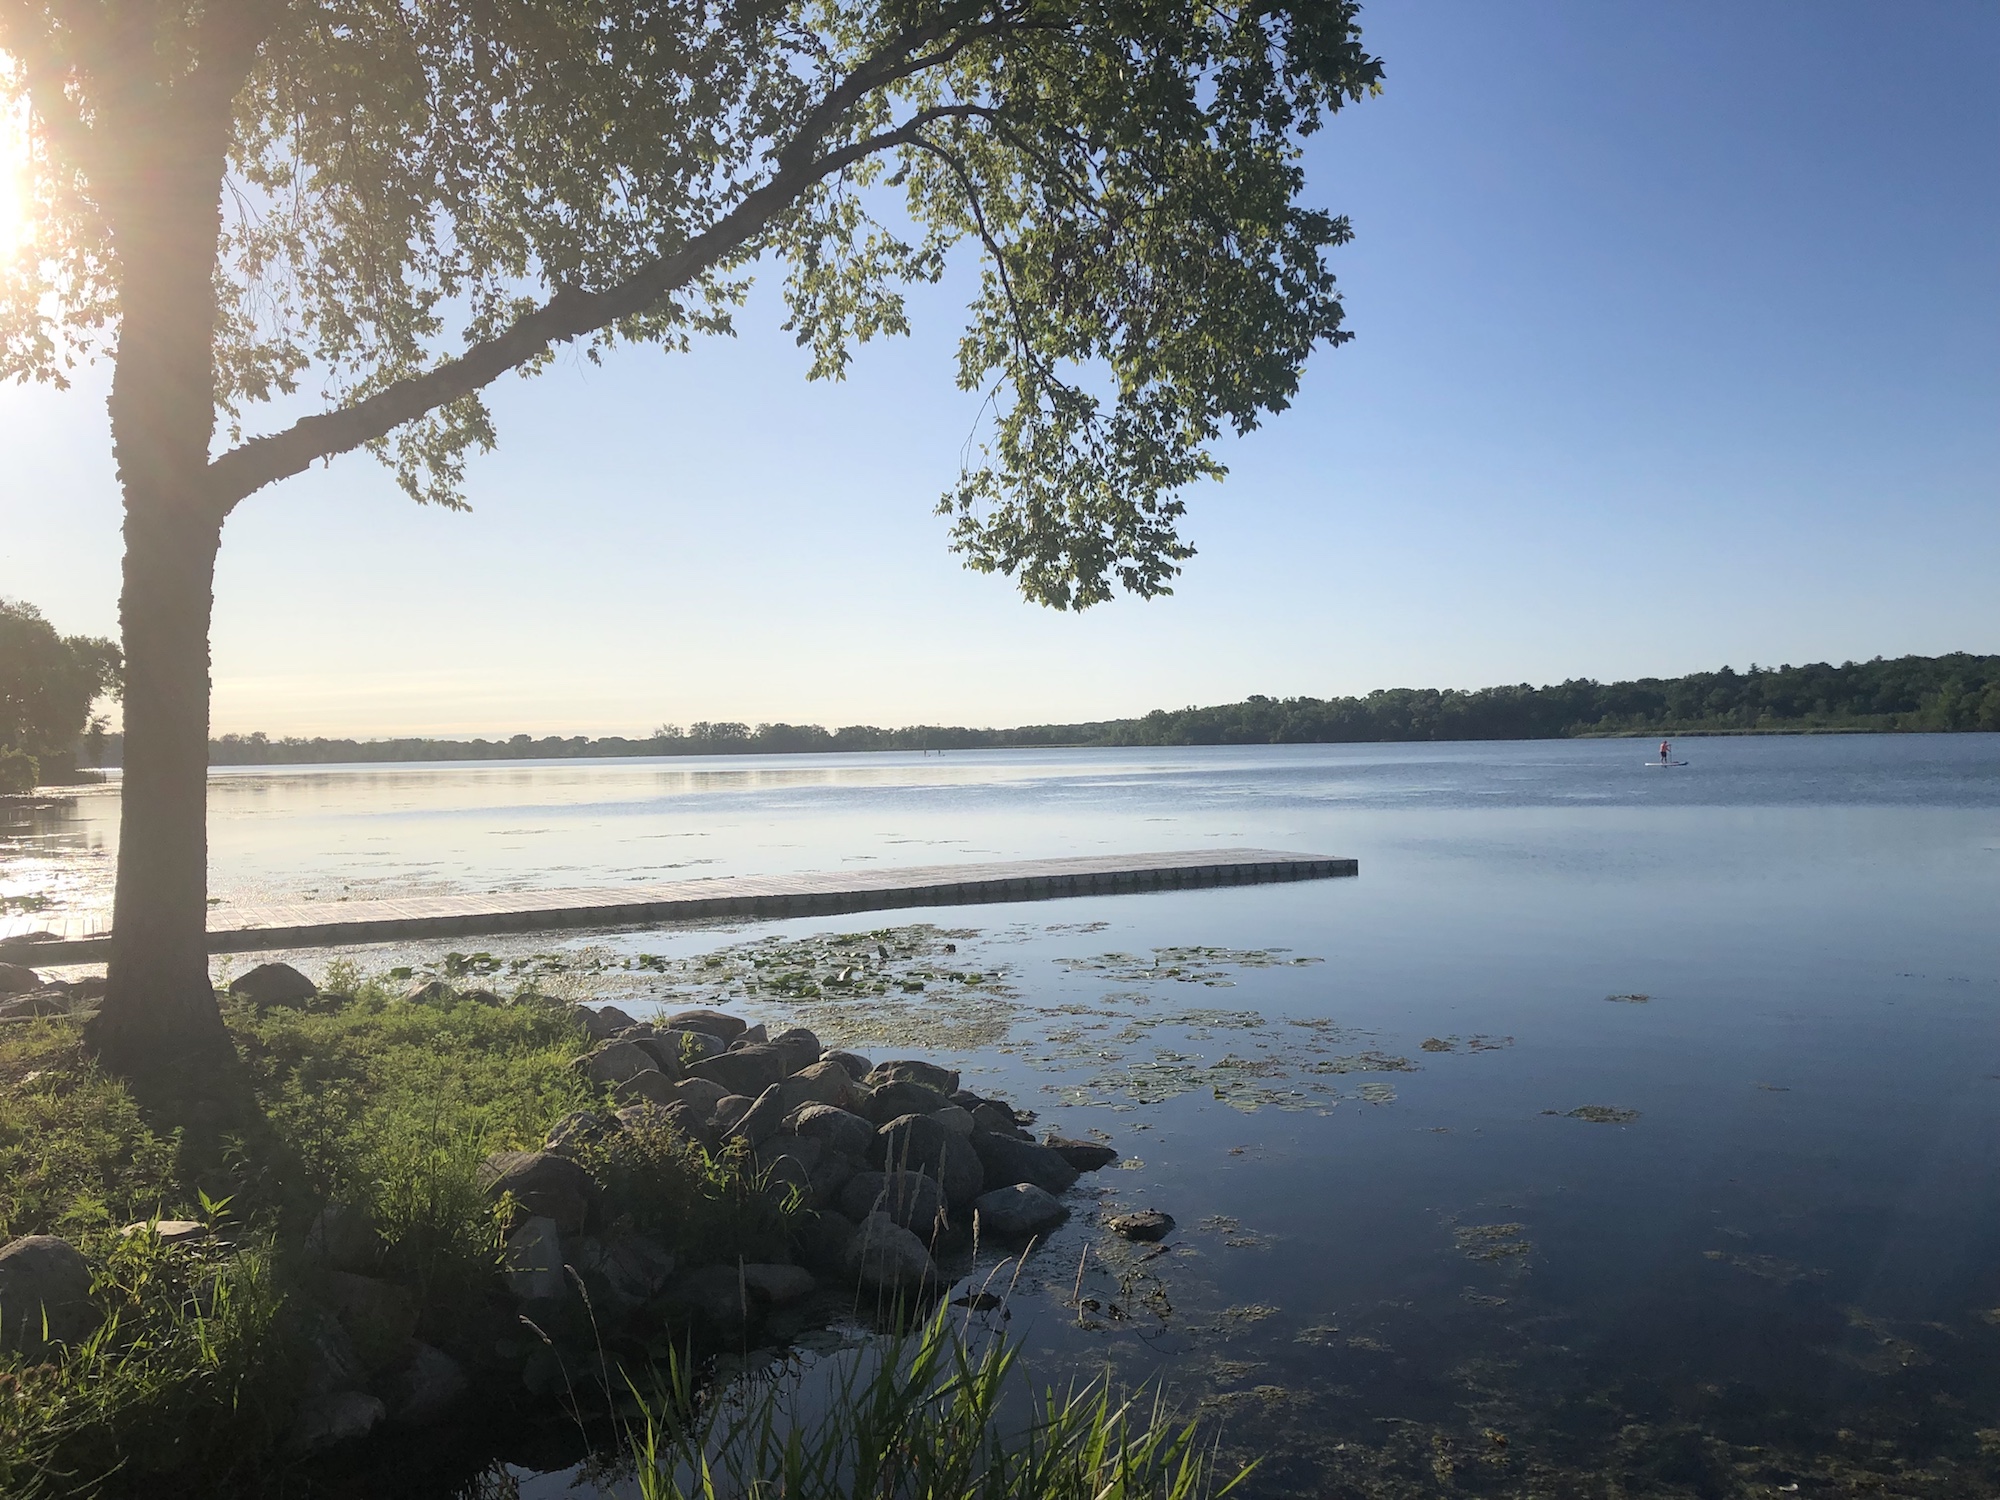 Lake Wingra on July 30, 2019.